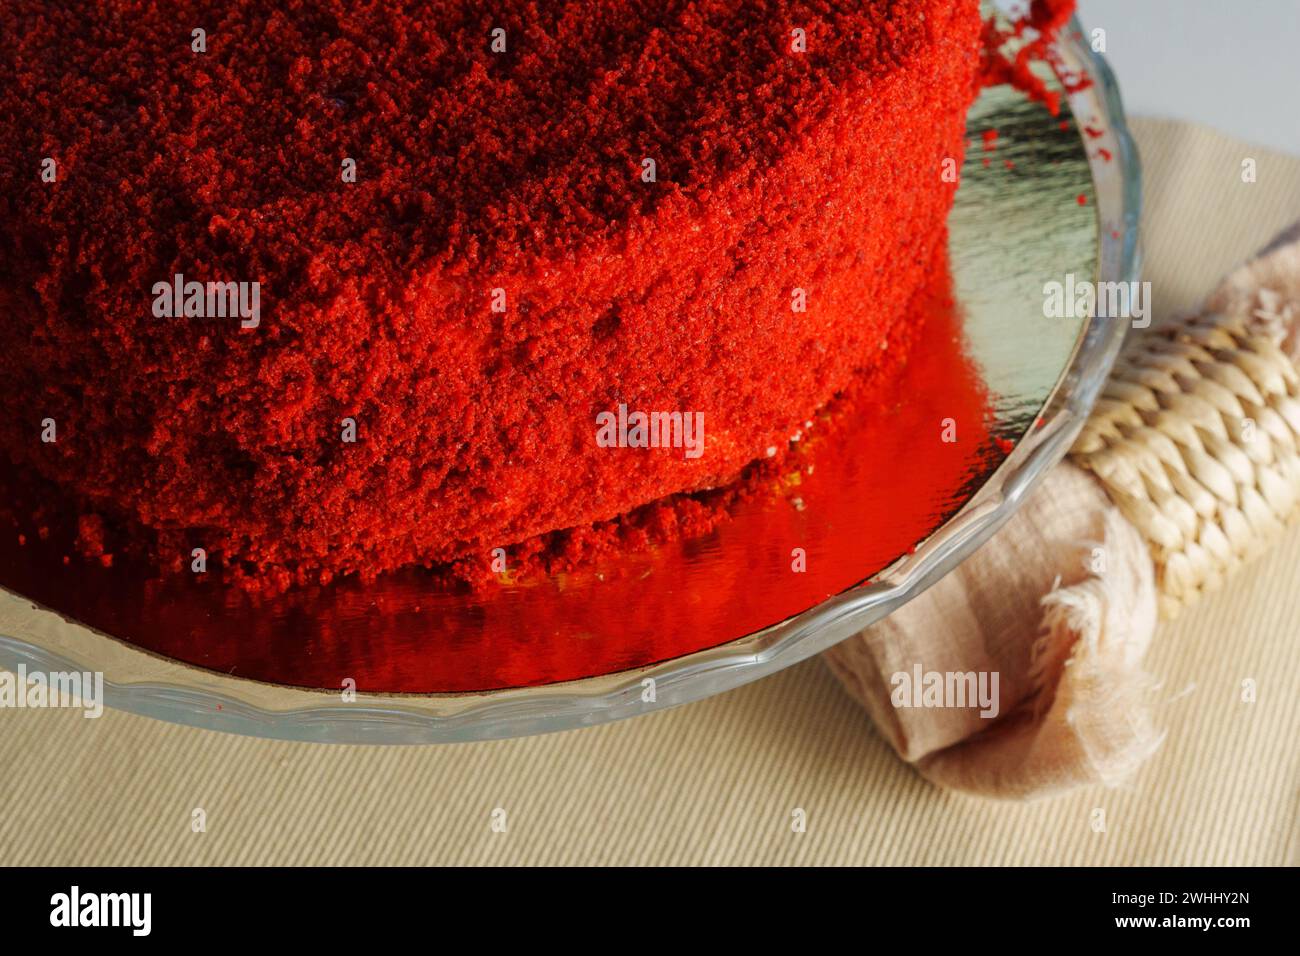 Radiant Red Velvet Cake on a Glass Platter, selective focus Stock Photo